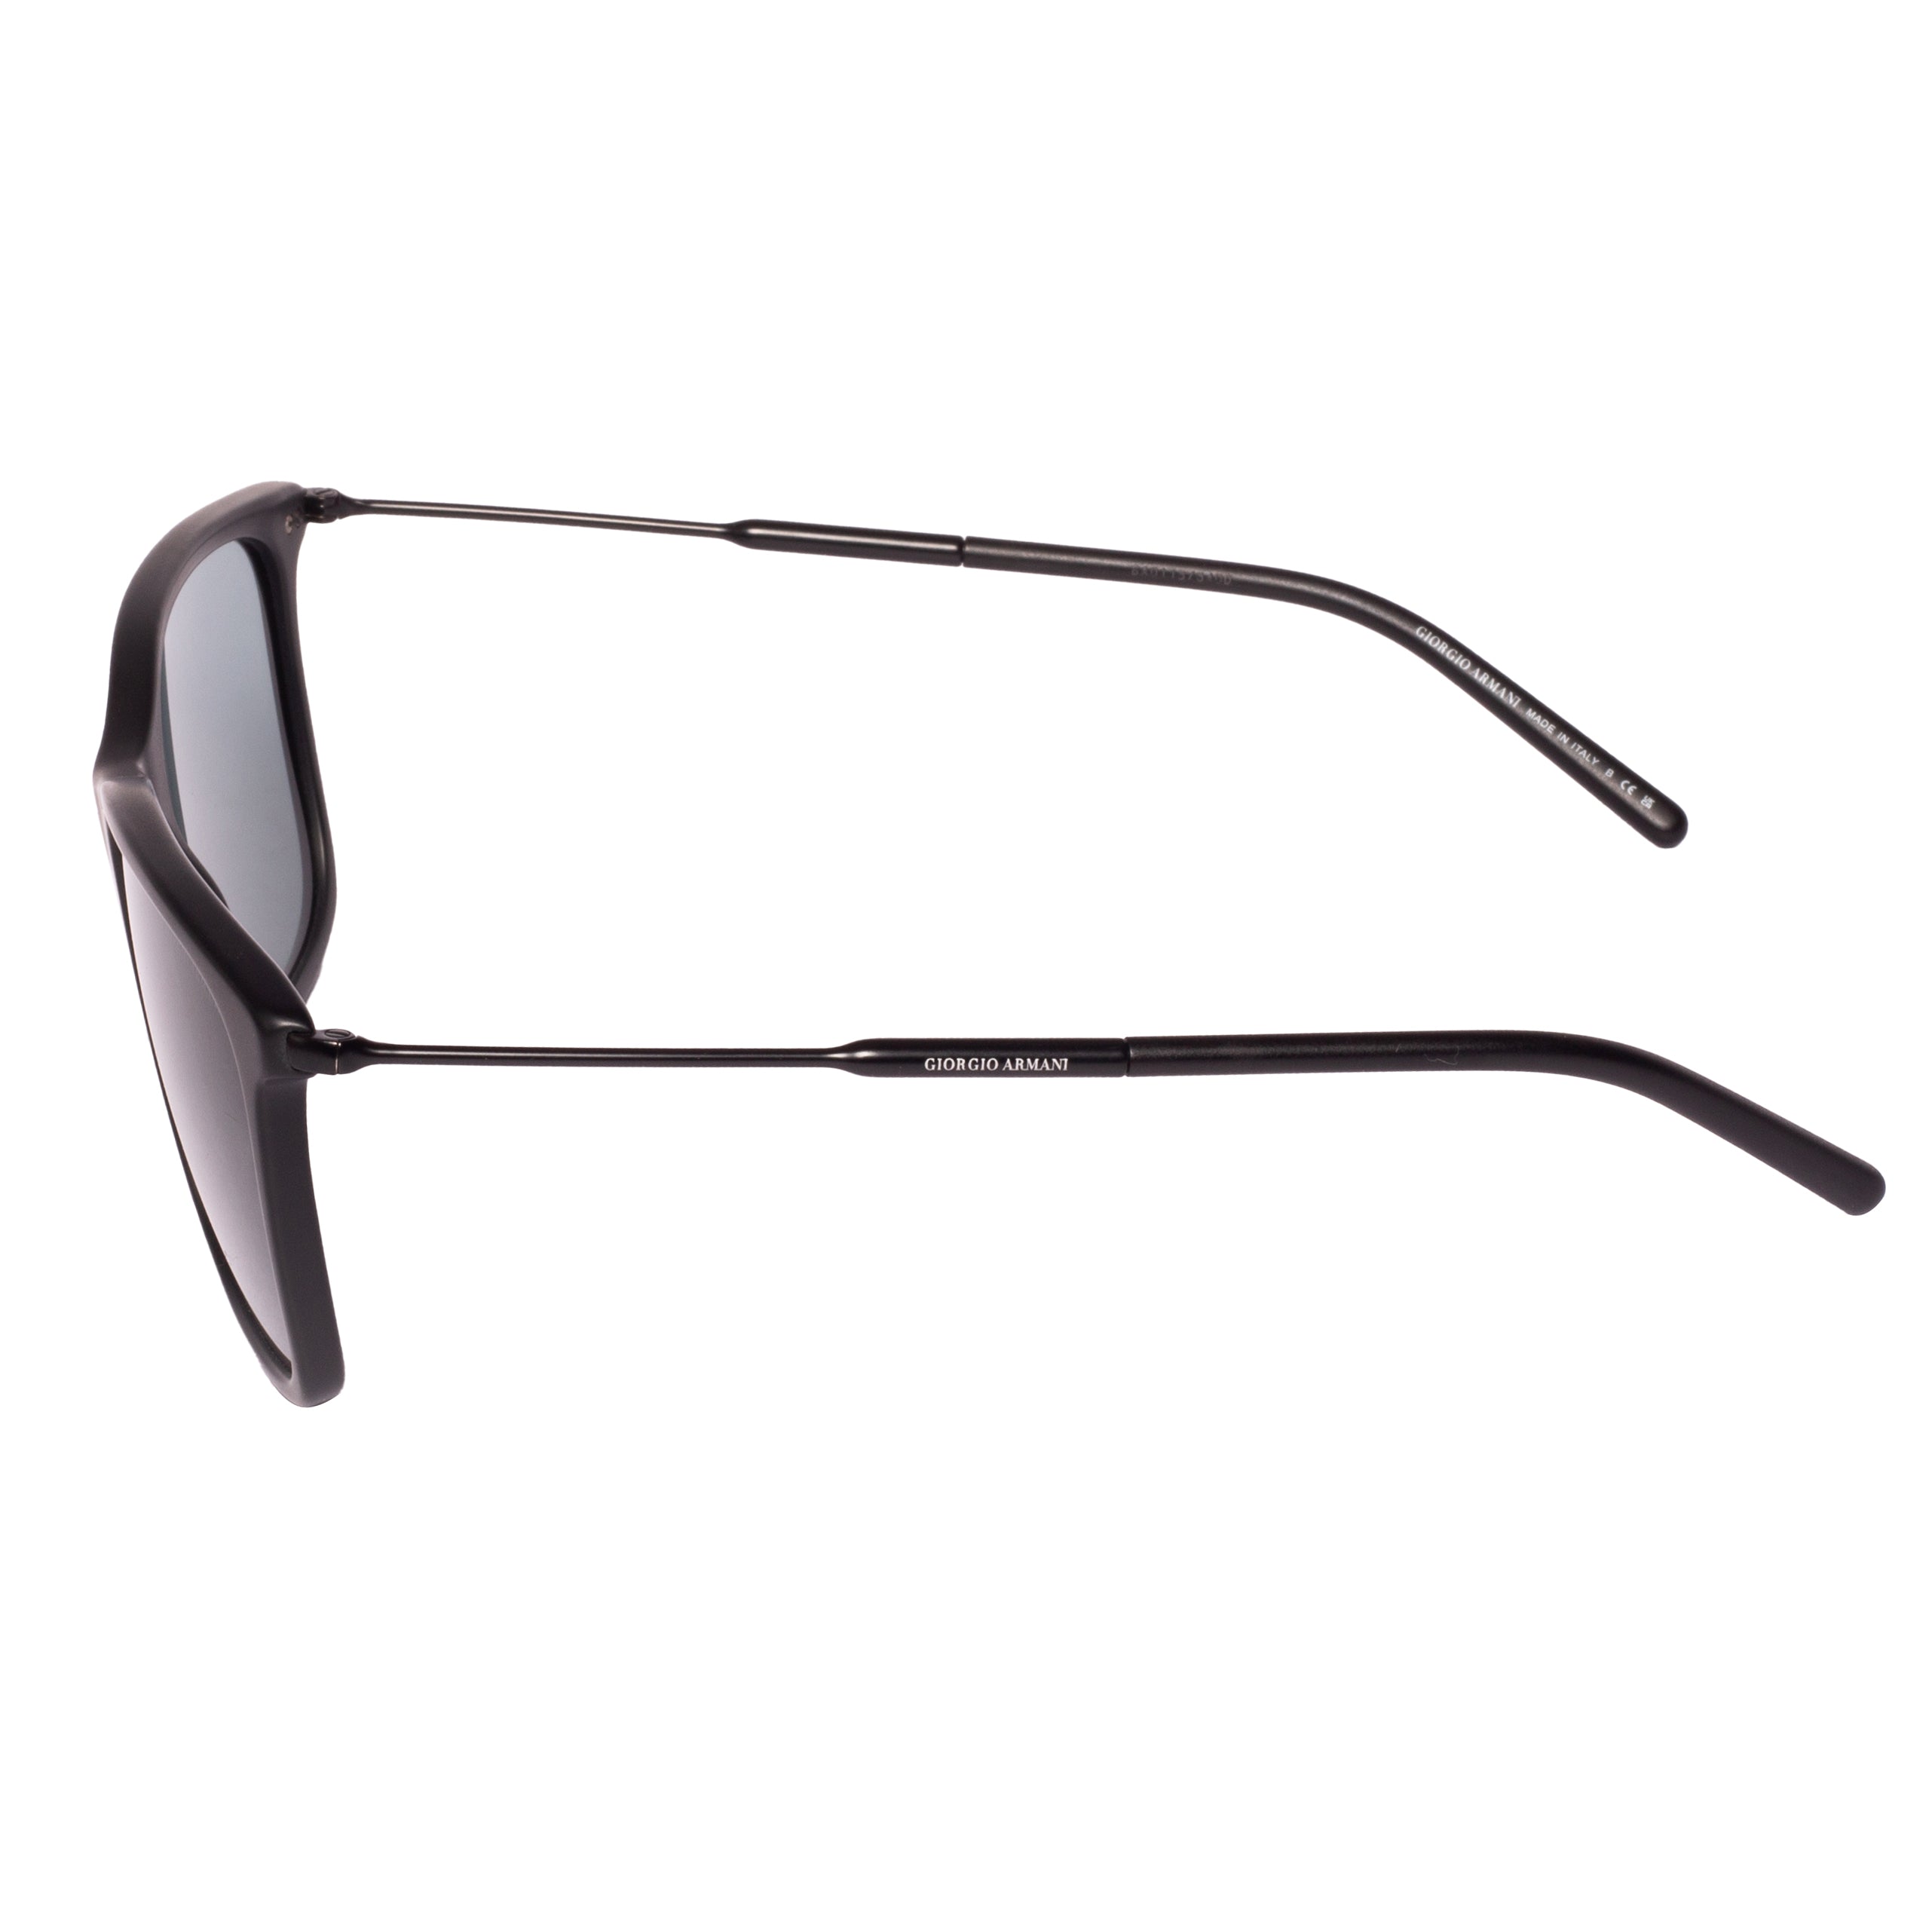 Giorgio Armani-AR 8176-57-504211 Sunglasses - Premium Sunglasses from Giorgio Armani - Just Rs. 23090! Shop now at Laxmi Opticians